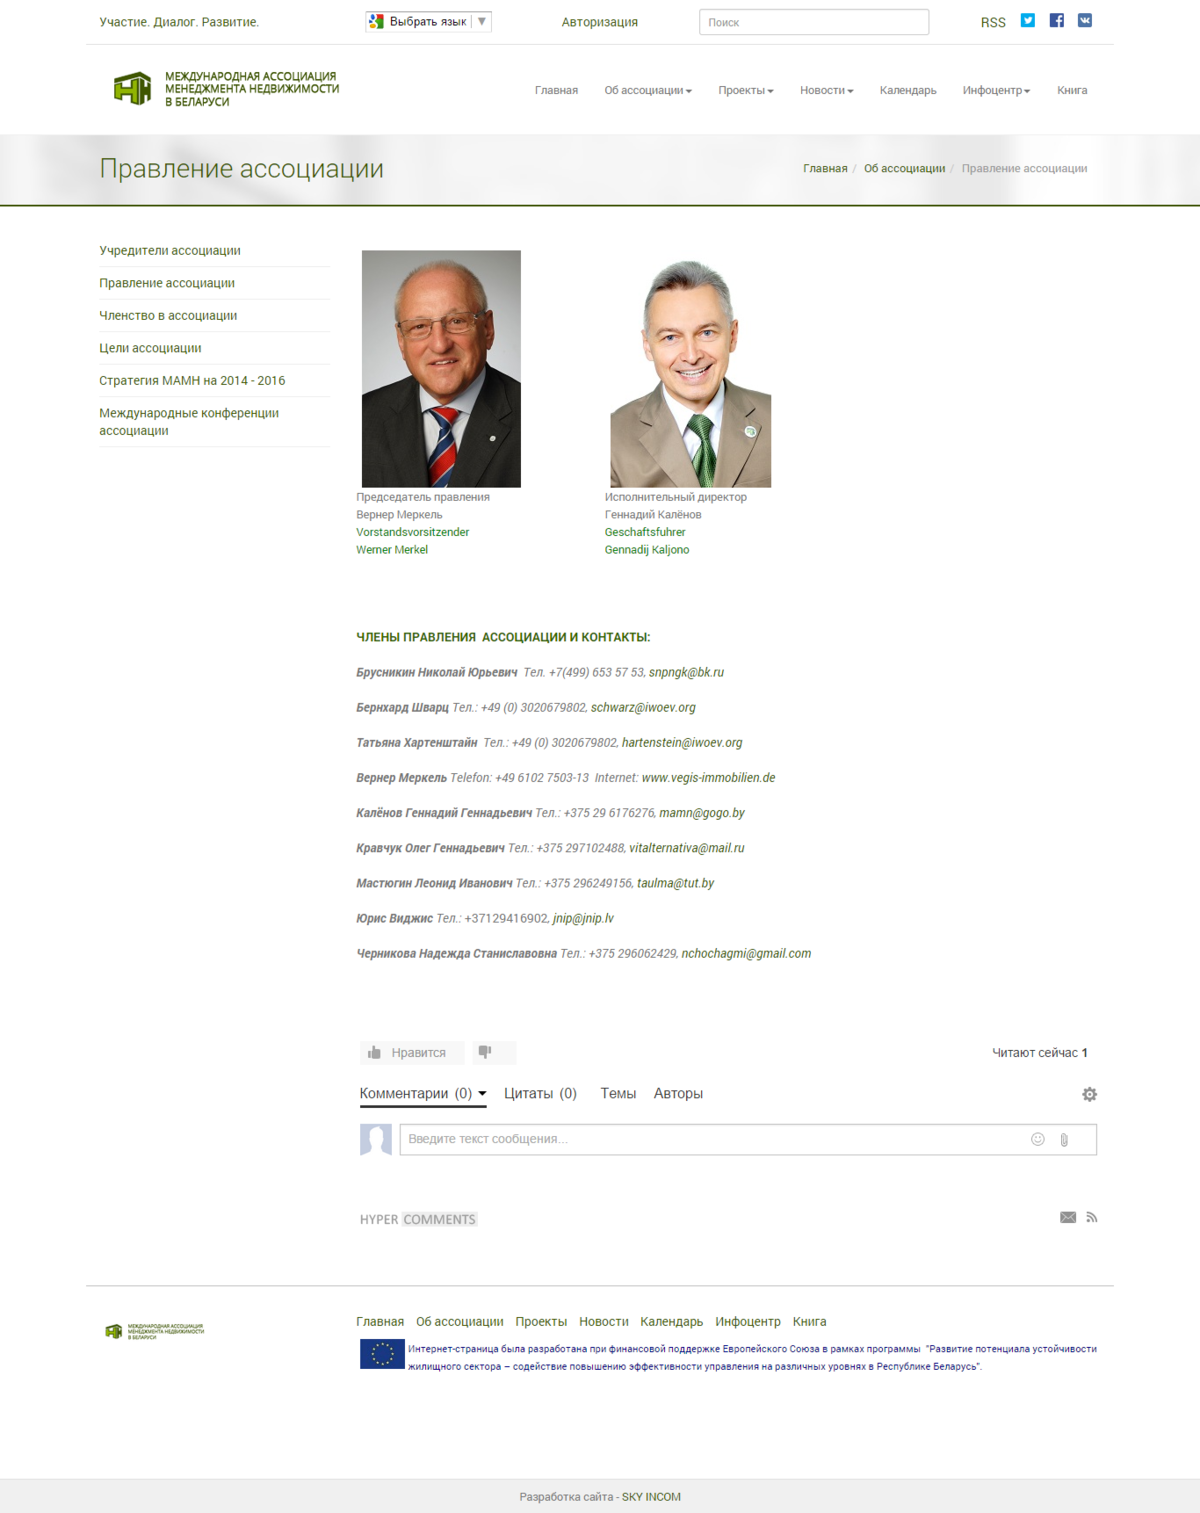 International Association of Real Estate Management of Belarus